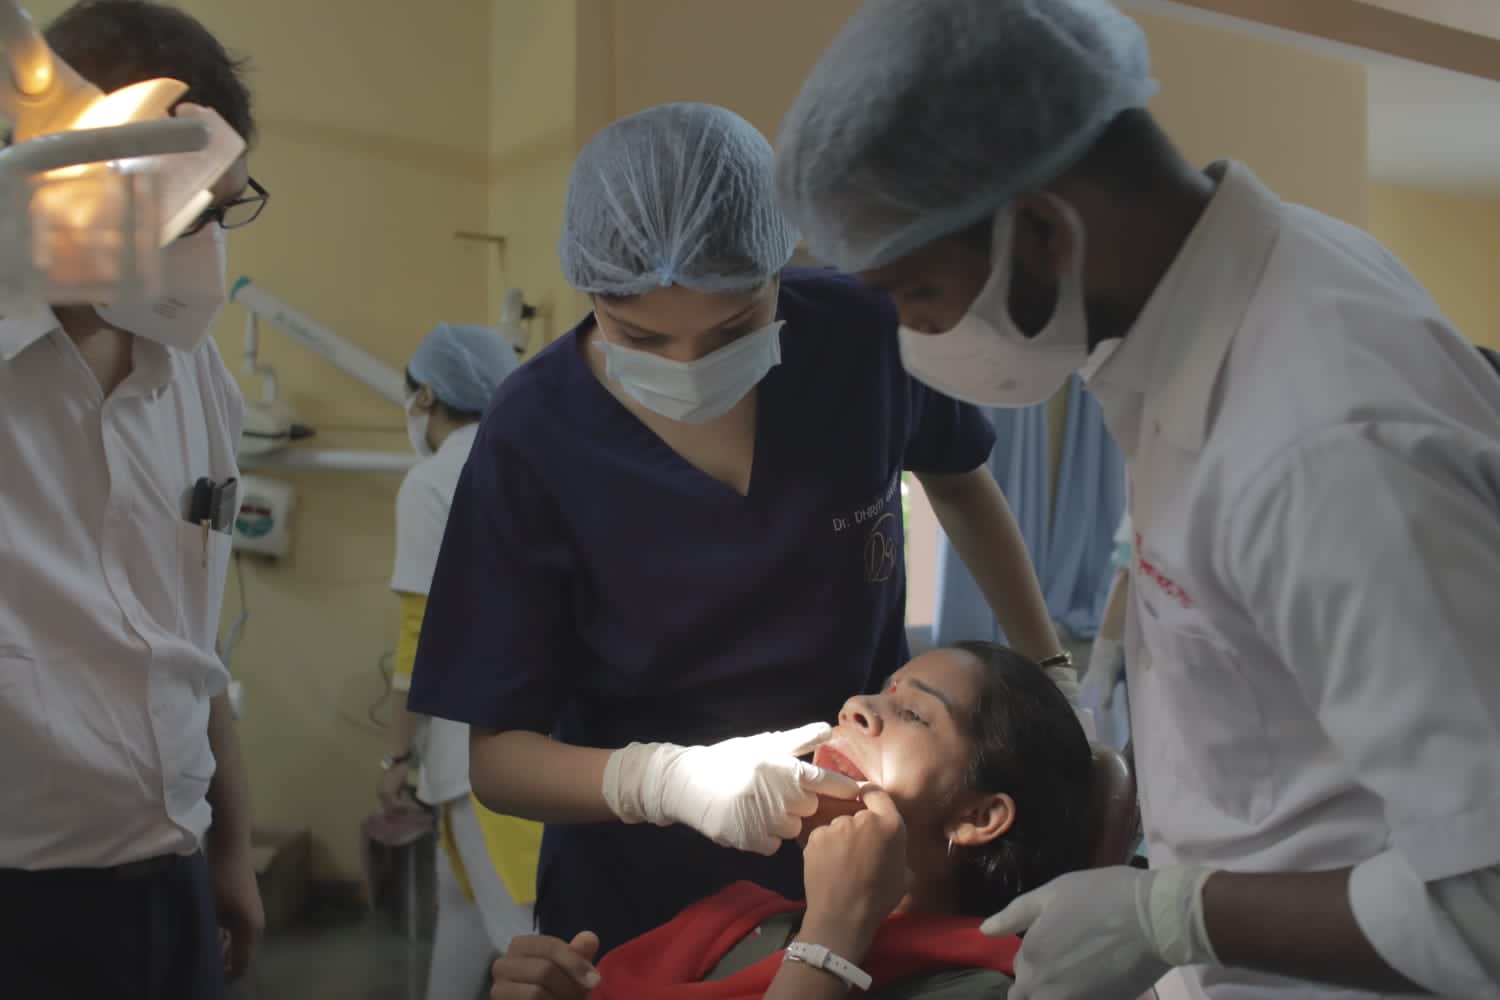 Dental treatment  | तीनशे रुग्णांवर मोफत  दंत उपचार | रामकृष्ण मठ दंतउपचार विभाग व  रोटरी क्लब ऑफ पुणे चा उपक्रम